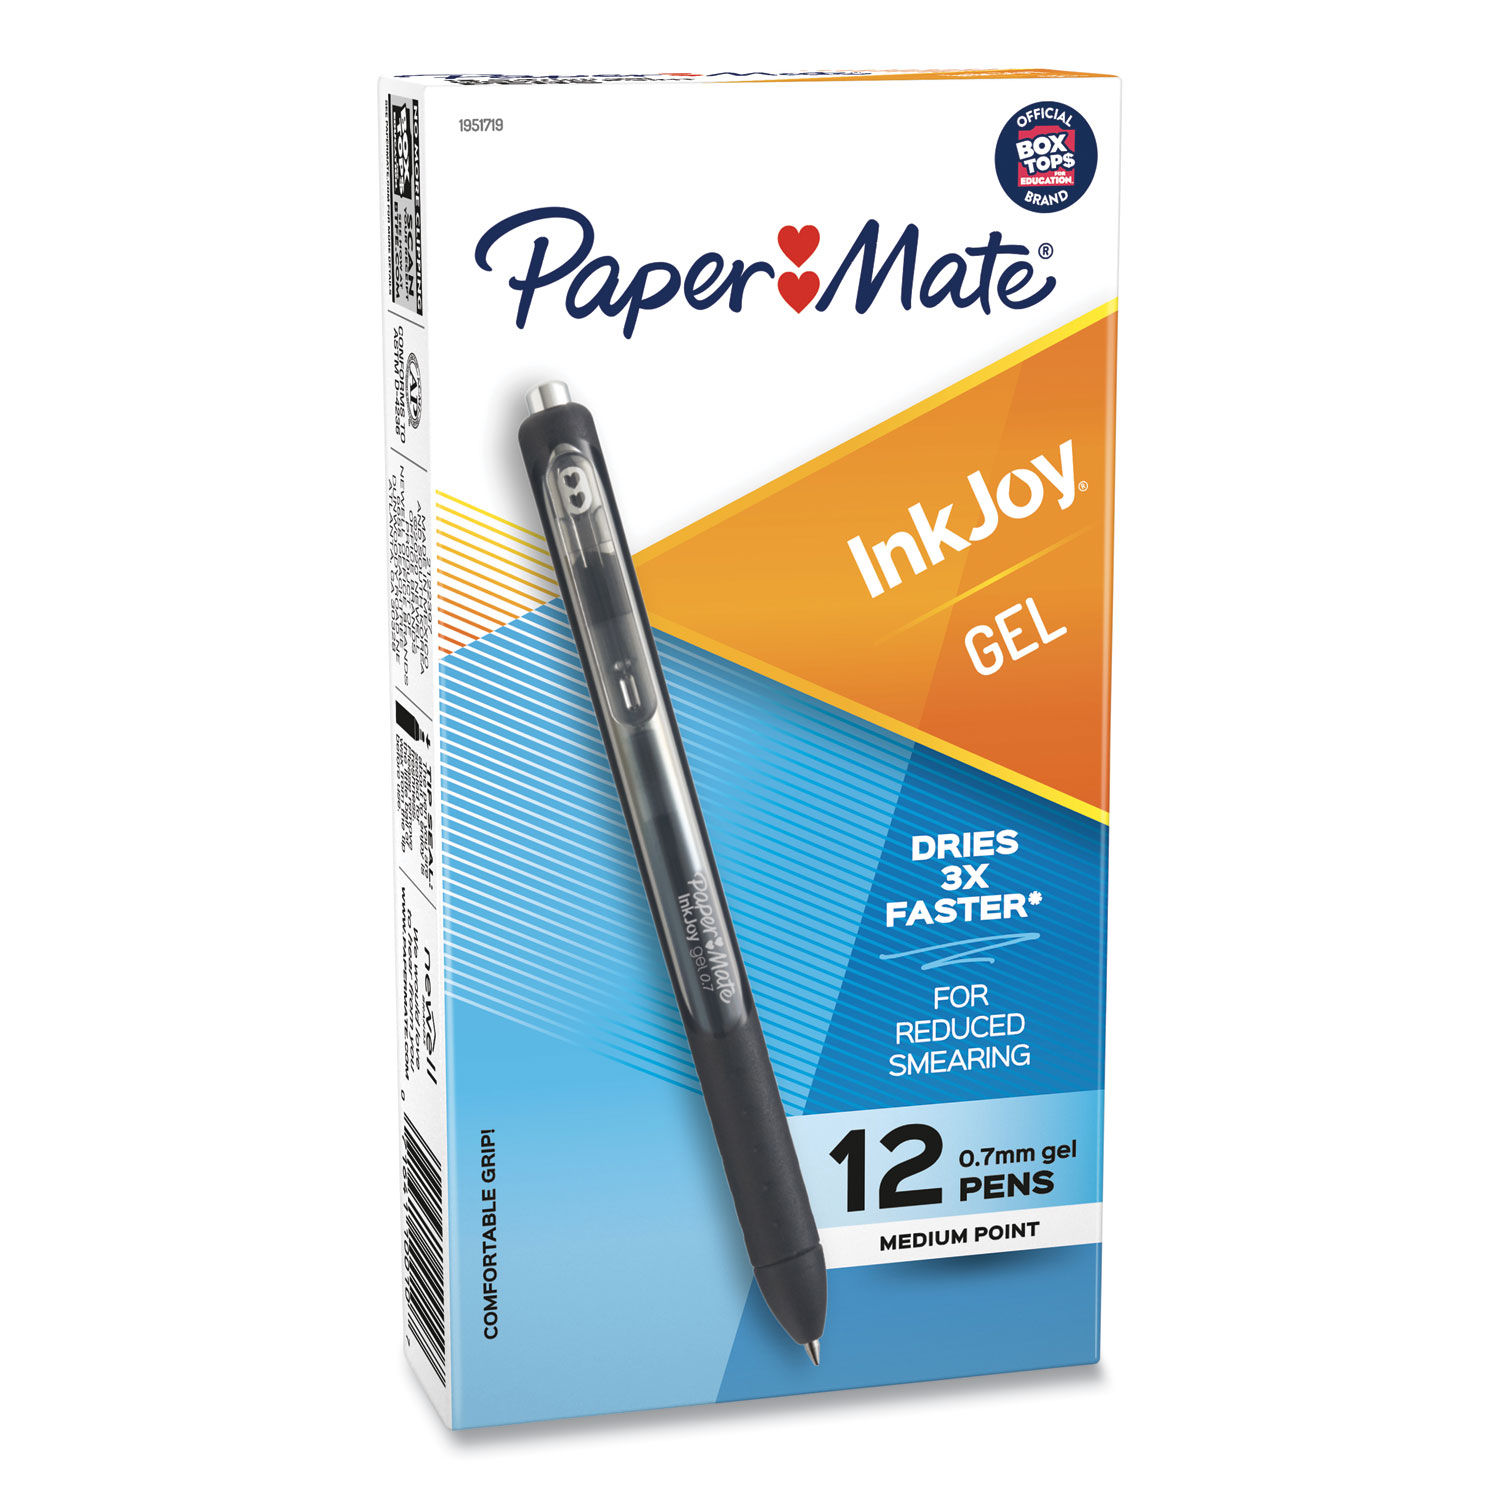 InkJoy Gel Pen by Paper Mate® PAP1951719